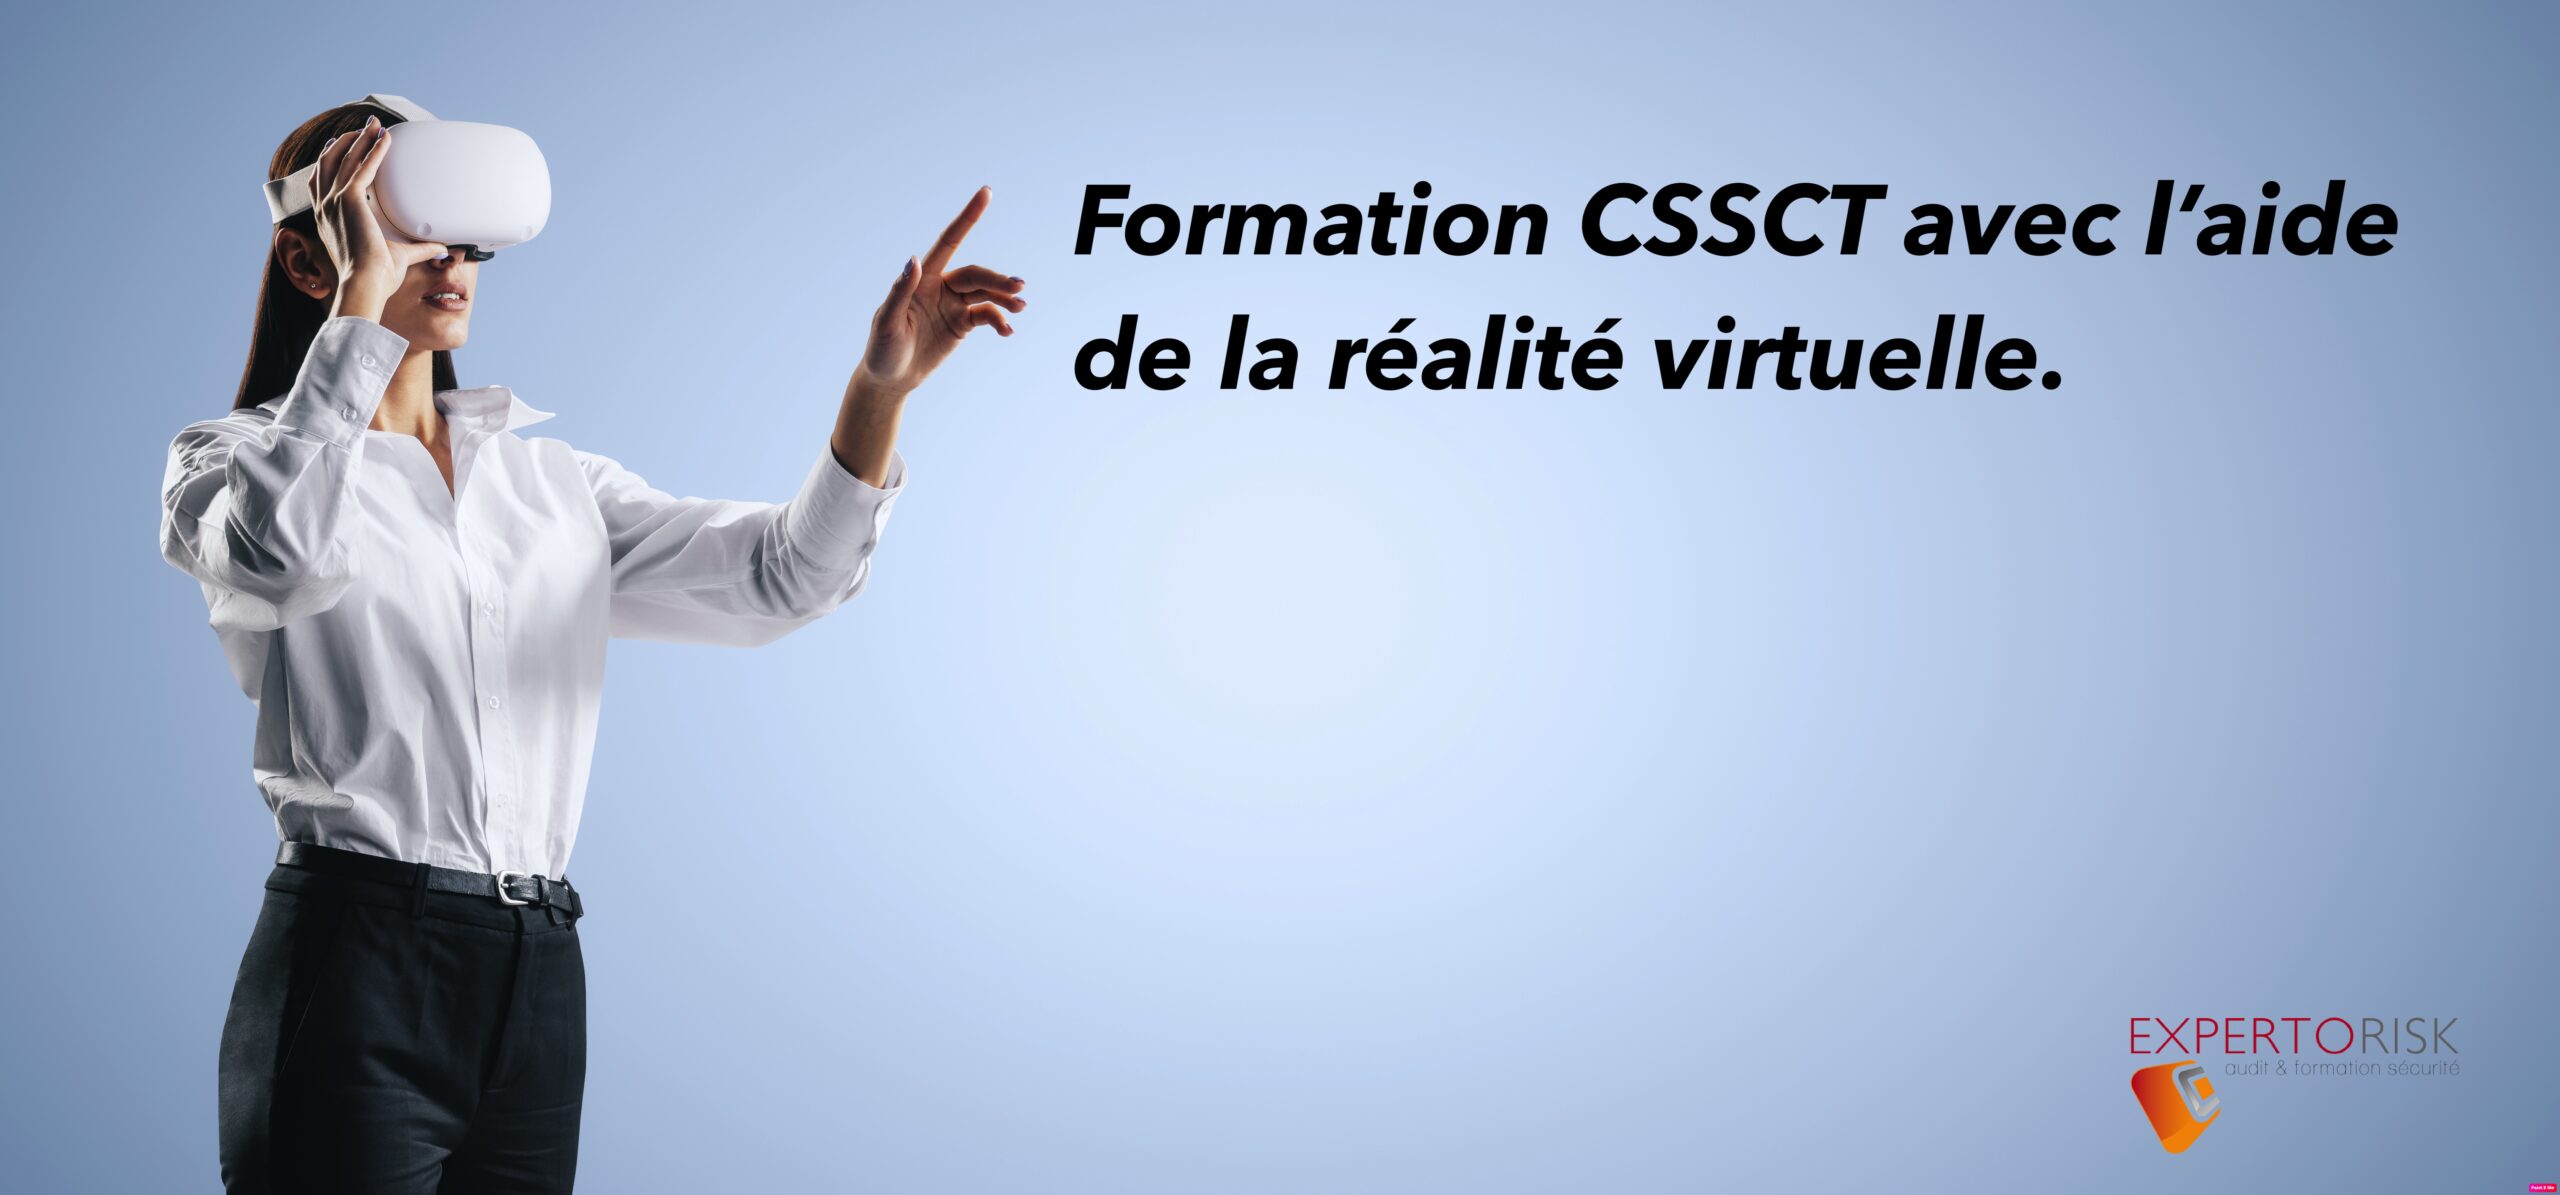 Formation CSSCT avec la réalité virtuelle